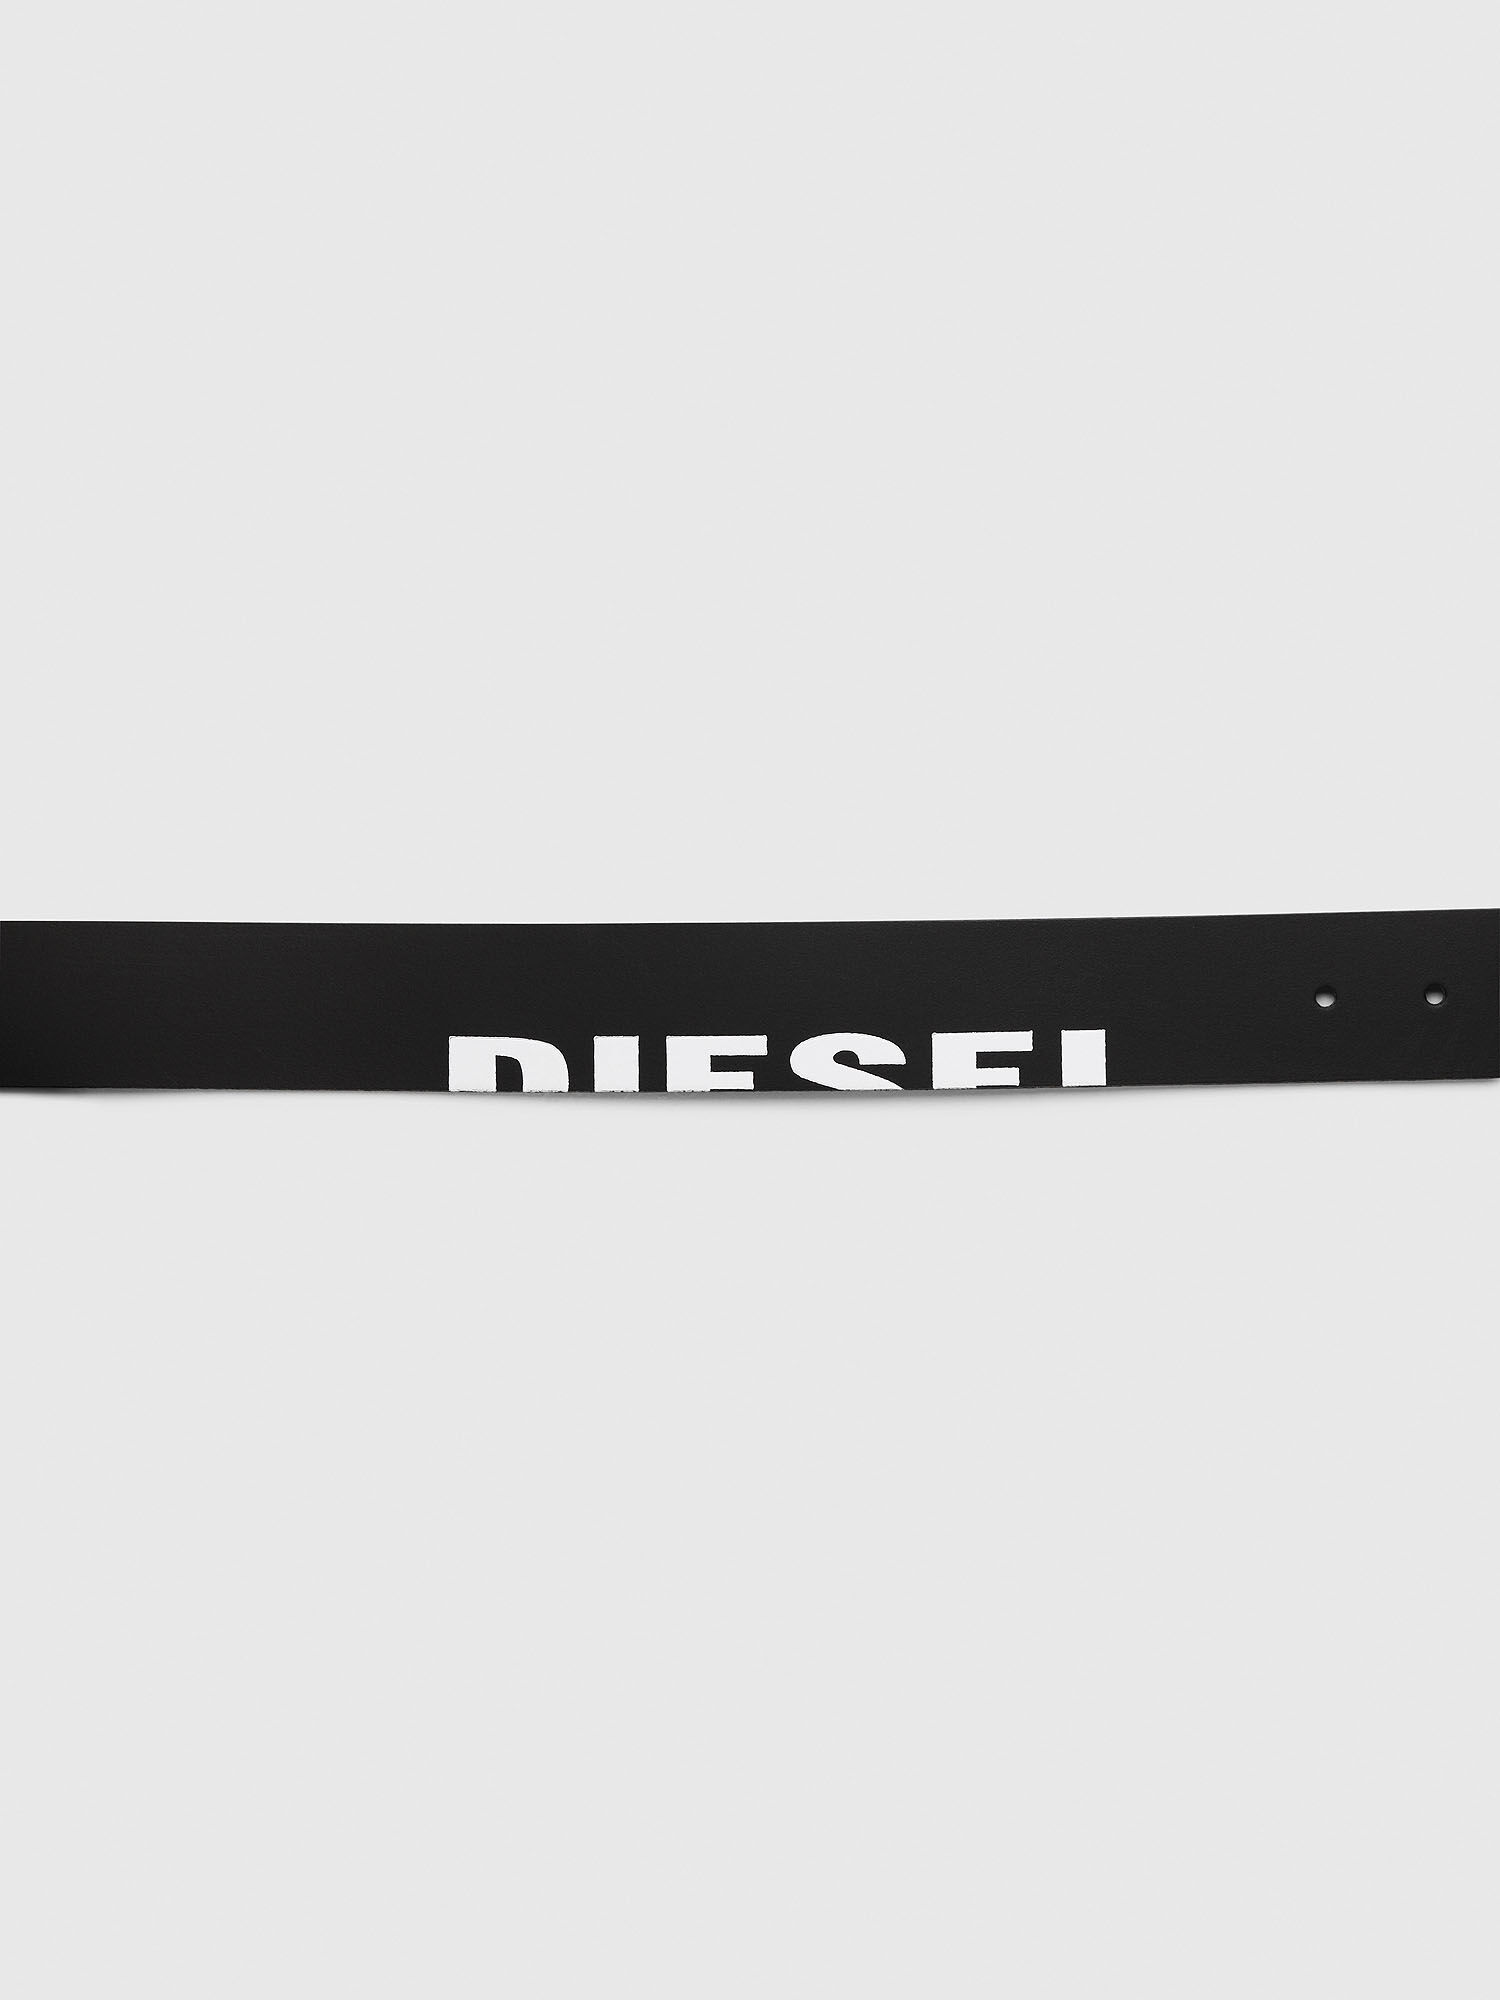 Diesel - B-DSL, Black - Image 4